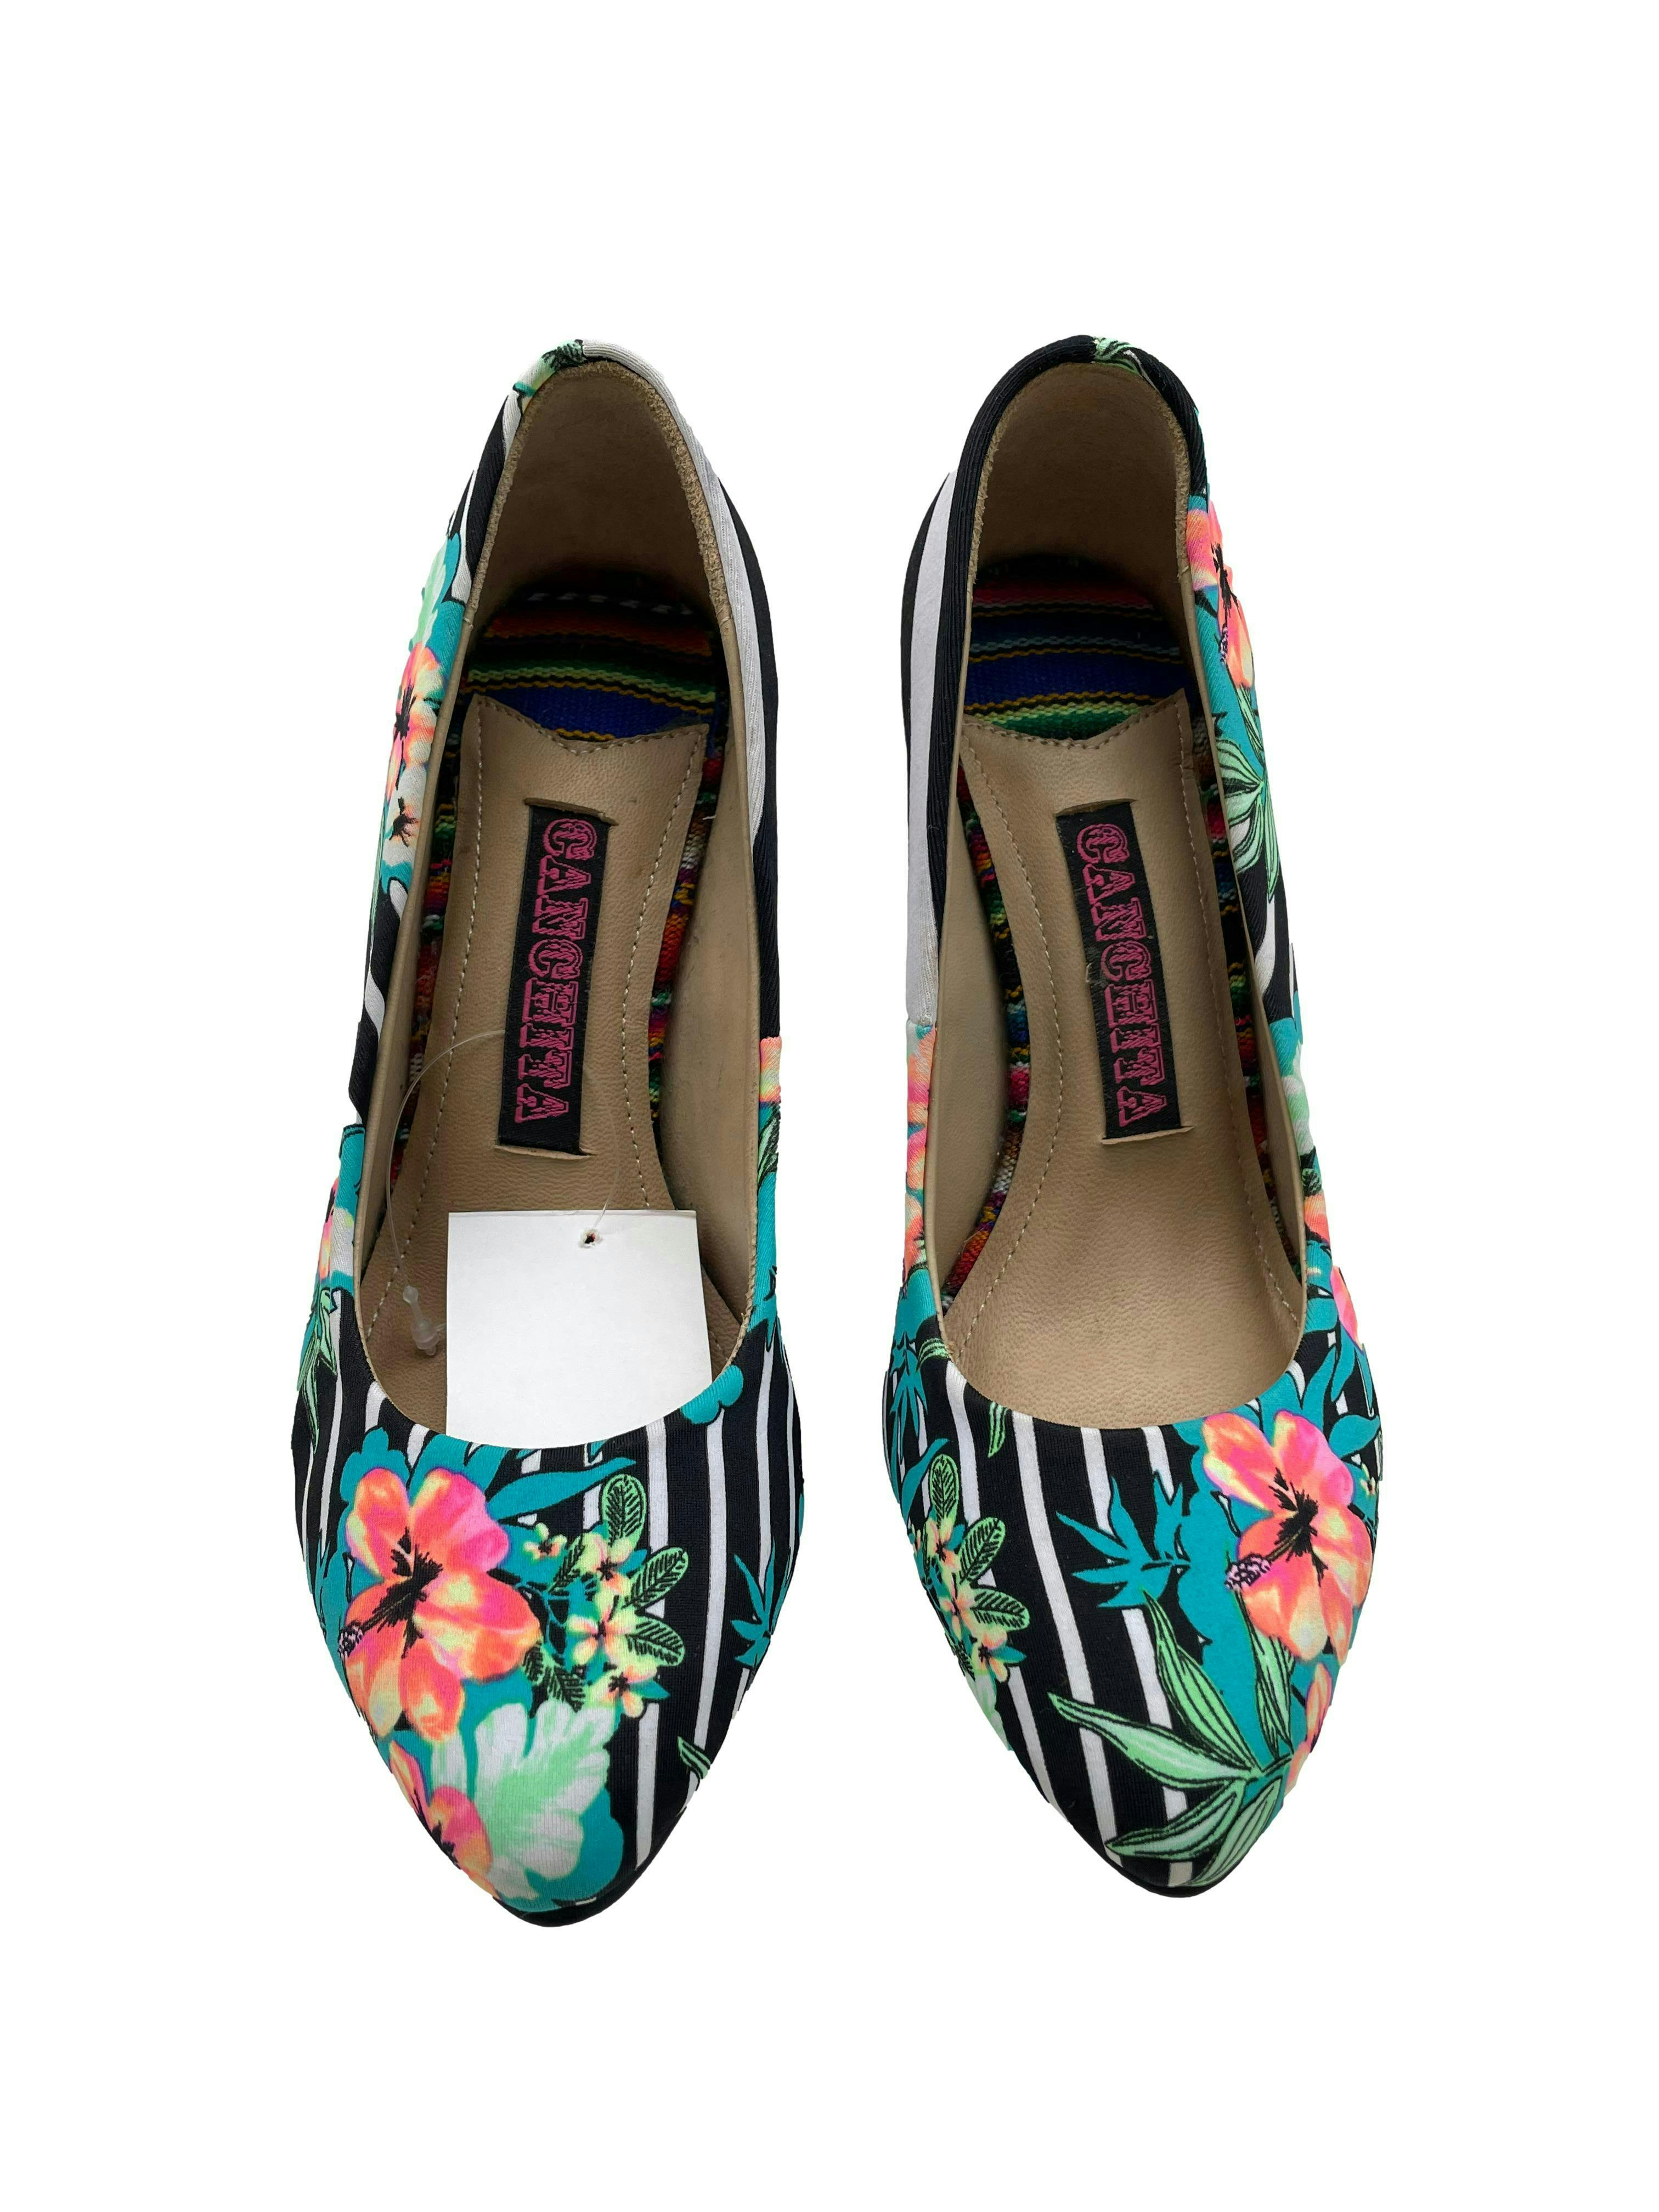 Zapatos Canchita de textil con estampado floral, taco 9cm. Estado como nuevo.